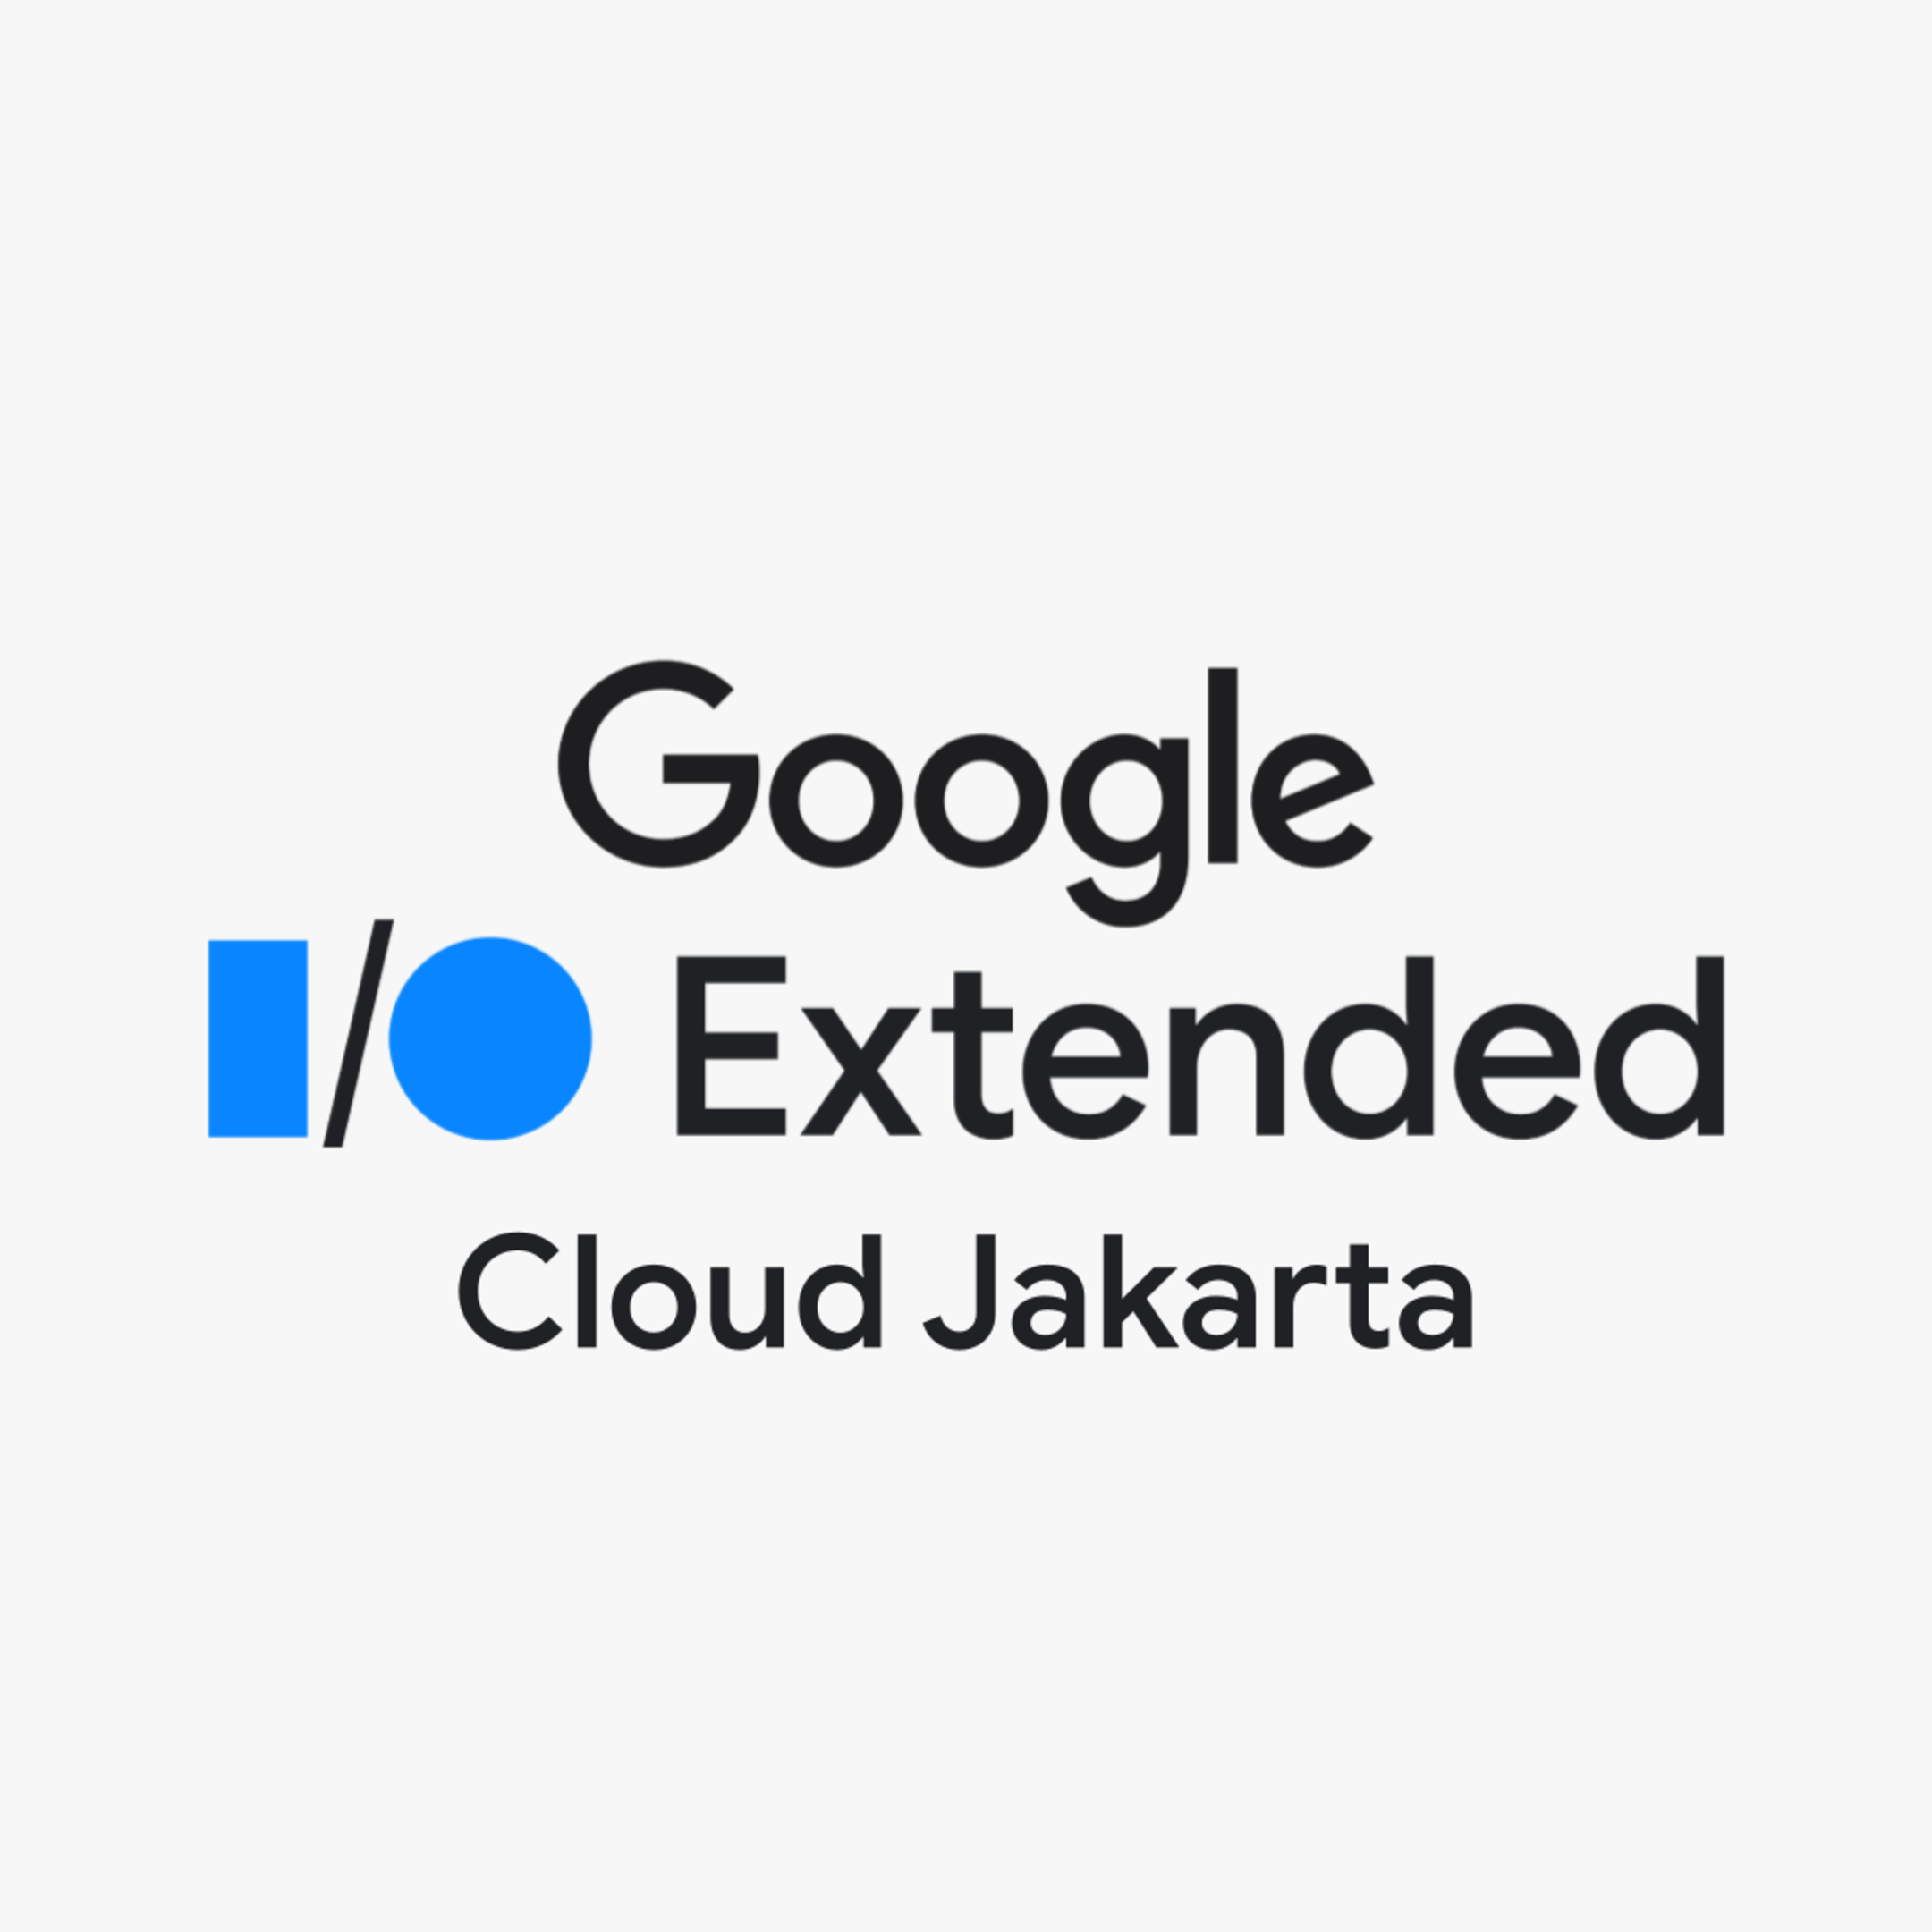 See Google I/O Extended Cloud Jakarta 2023 at Google Developer Groups